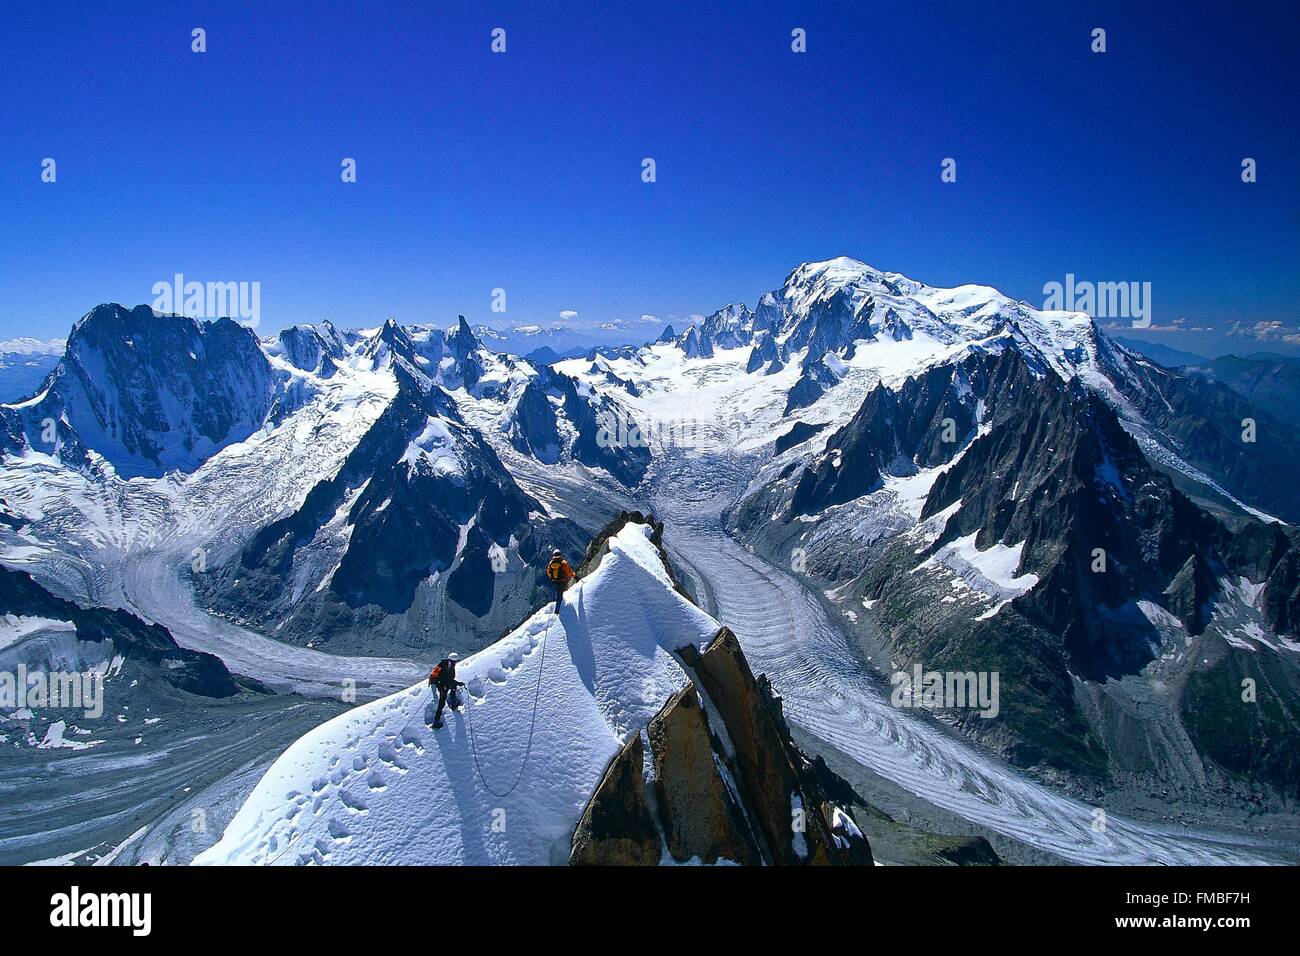 France, Haute Savoie, Chamonix, strung along the Arete du Moine at the Aiguille Verte (4122 m) Stock Photo